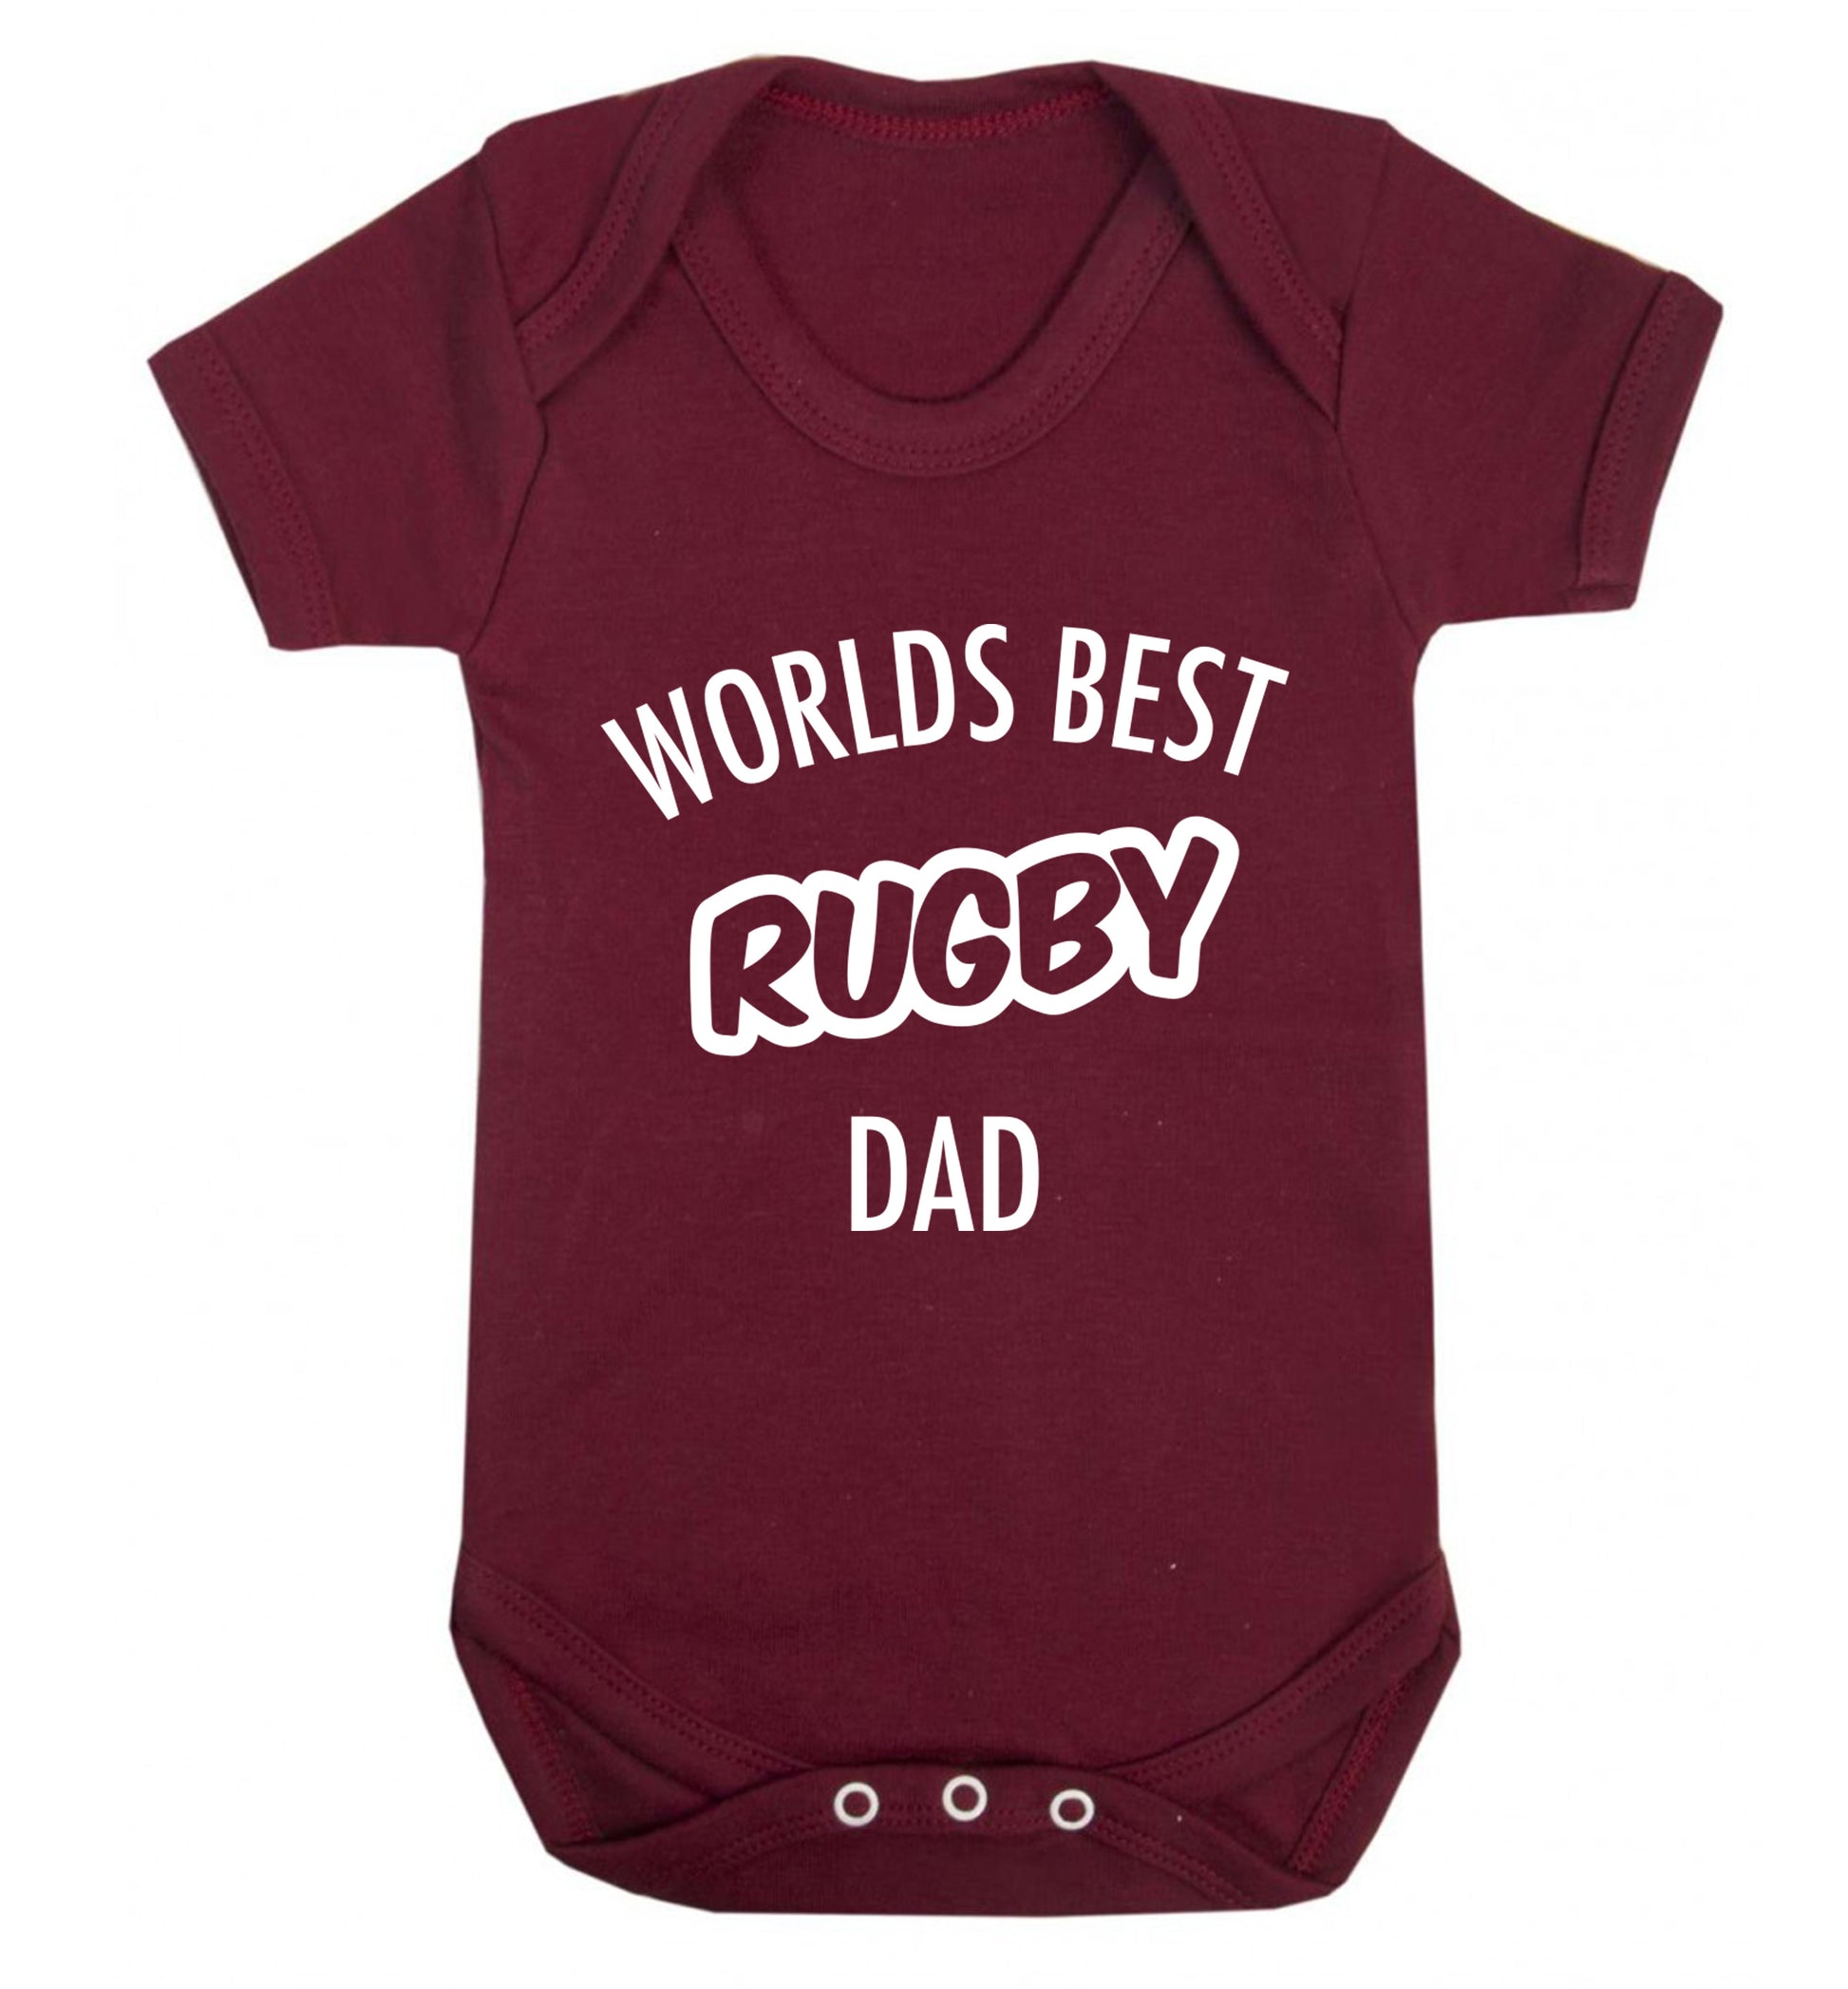 Worlds best rugby dad Baby Vest maroon 18-24 months